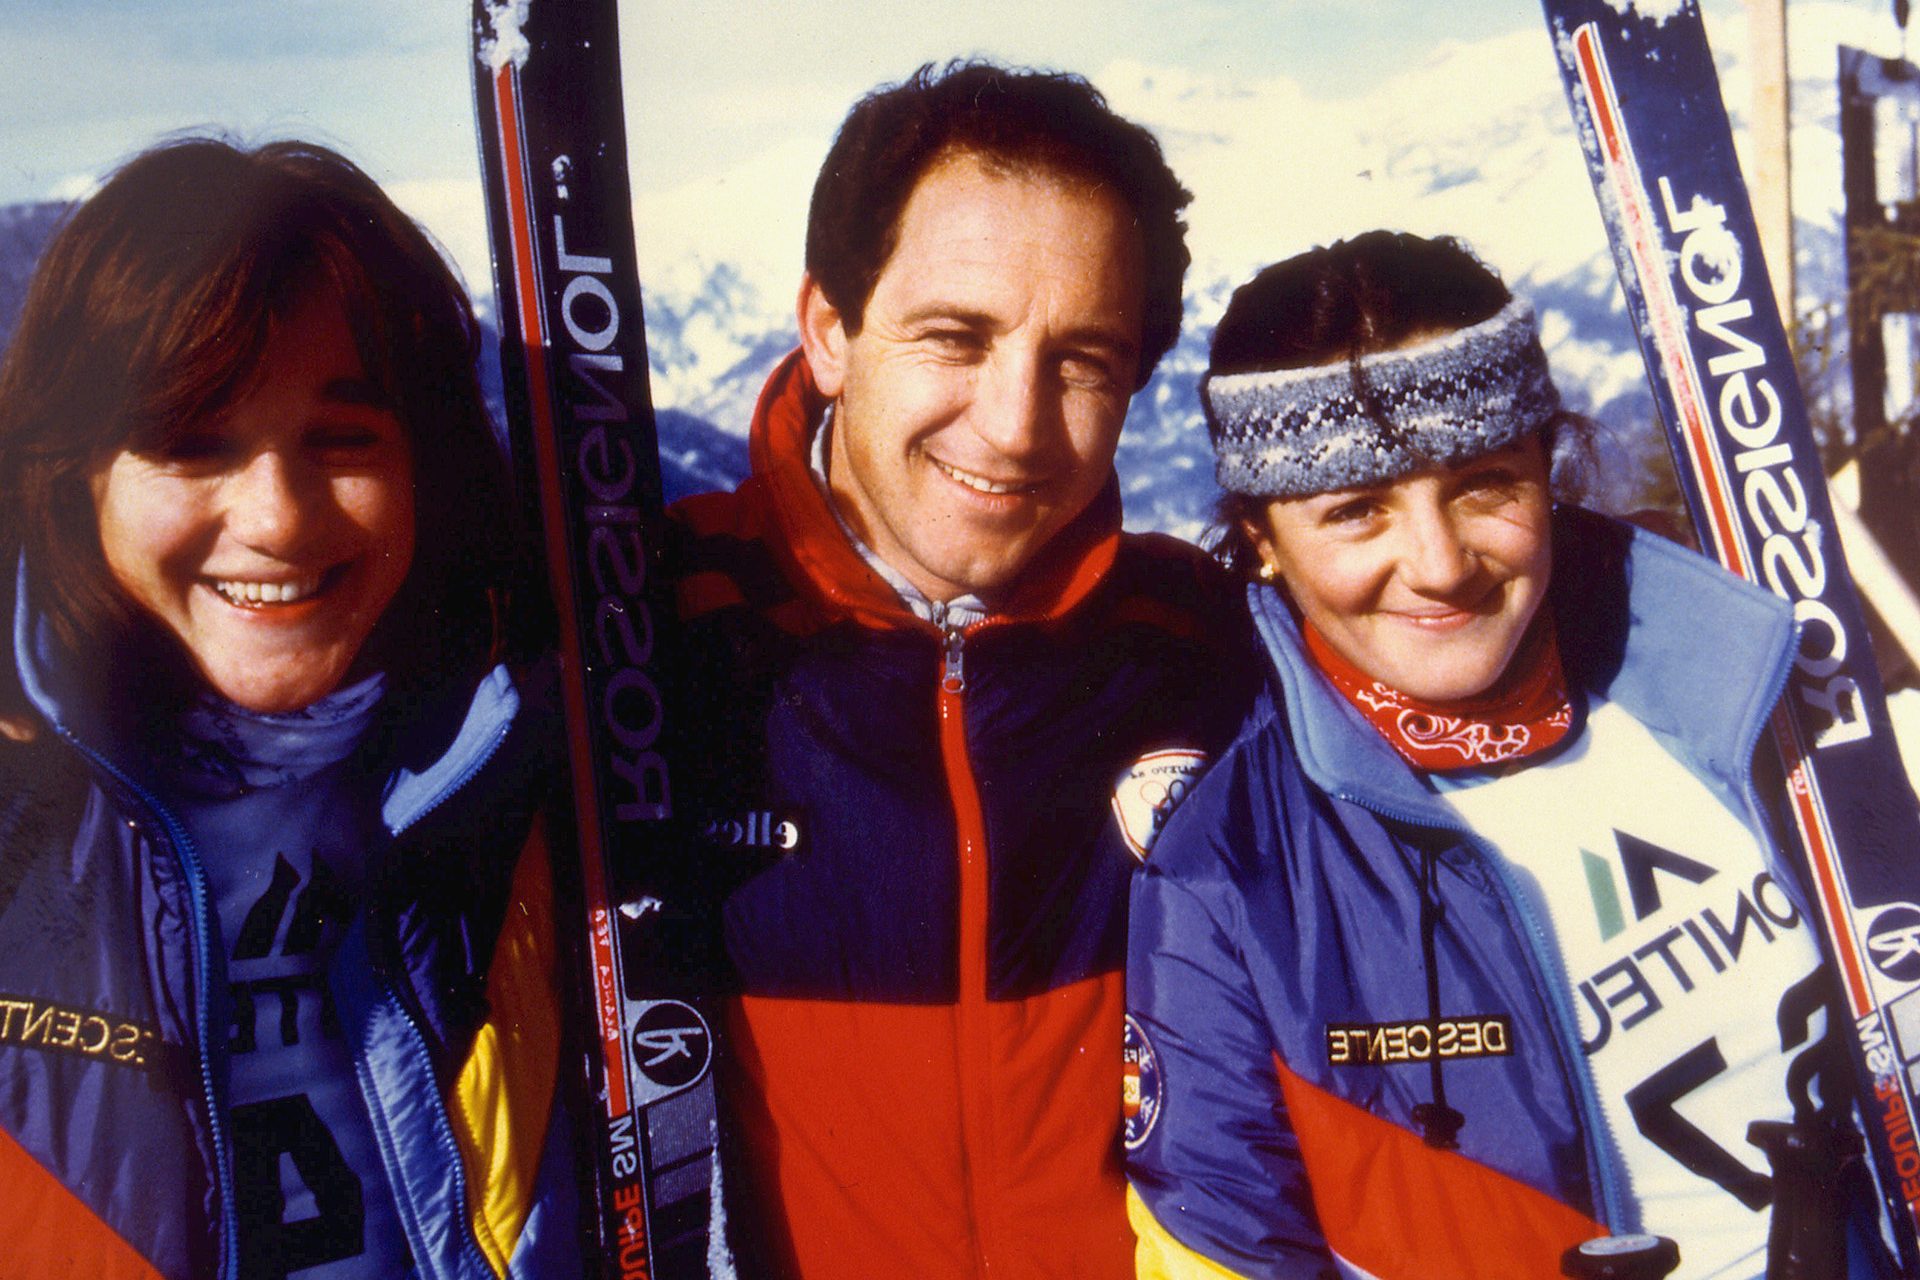 El esquí: muchos éxitos y demasiada presión